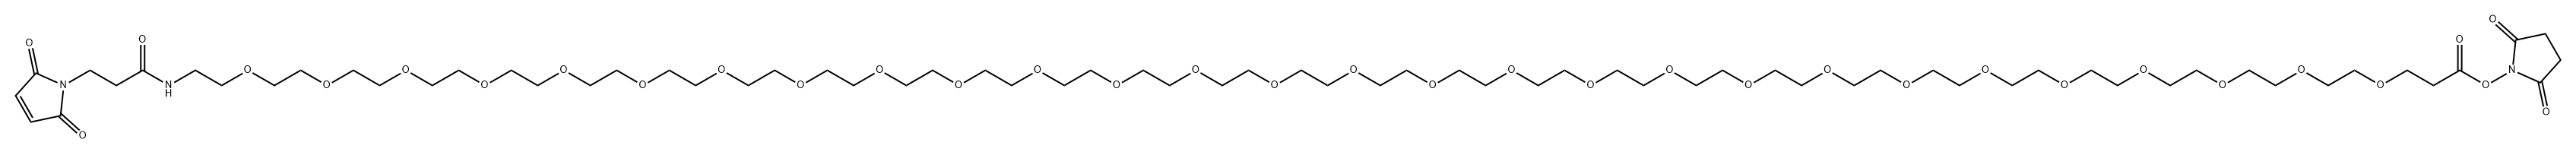 马来酰亚胺-酰胺-PEG28-琥珀酰亚胺酯 结构式